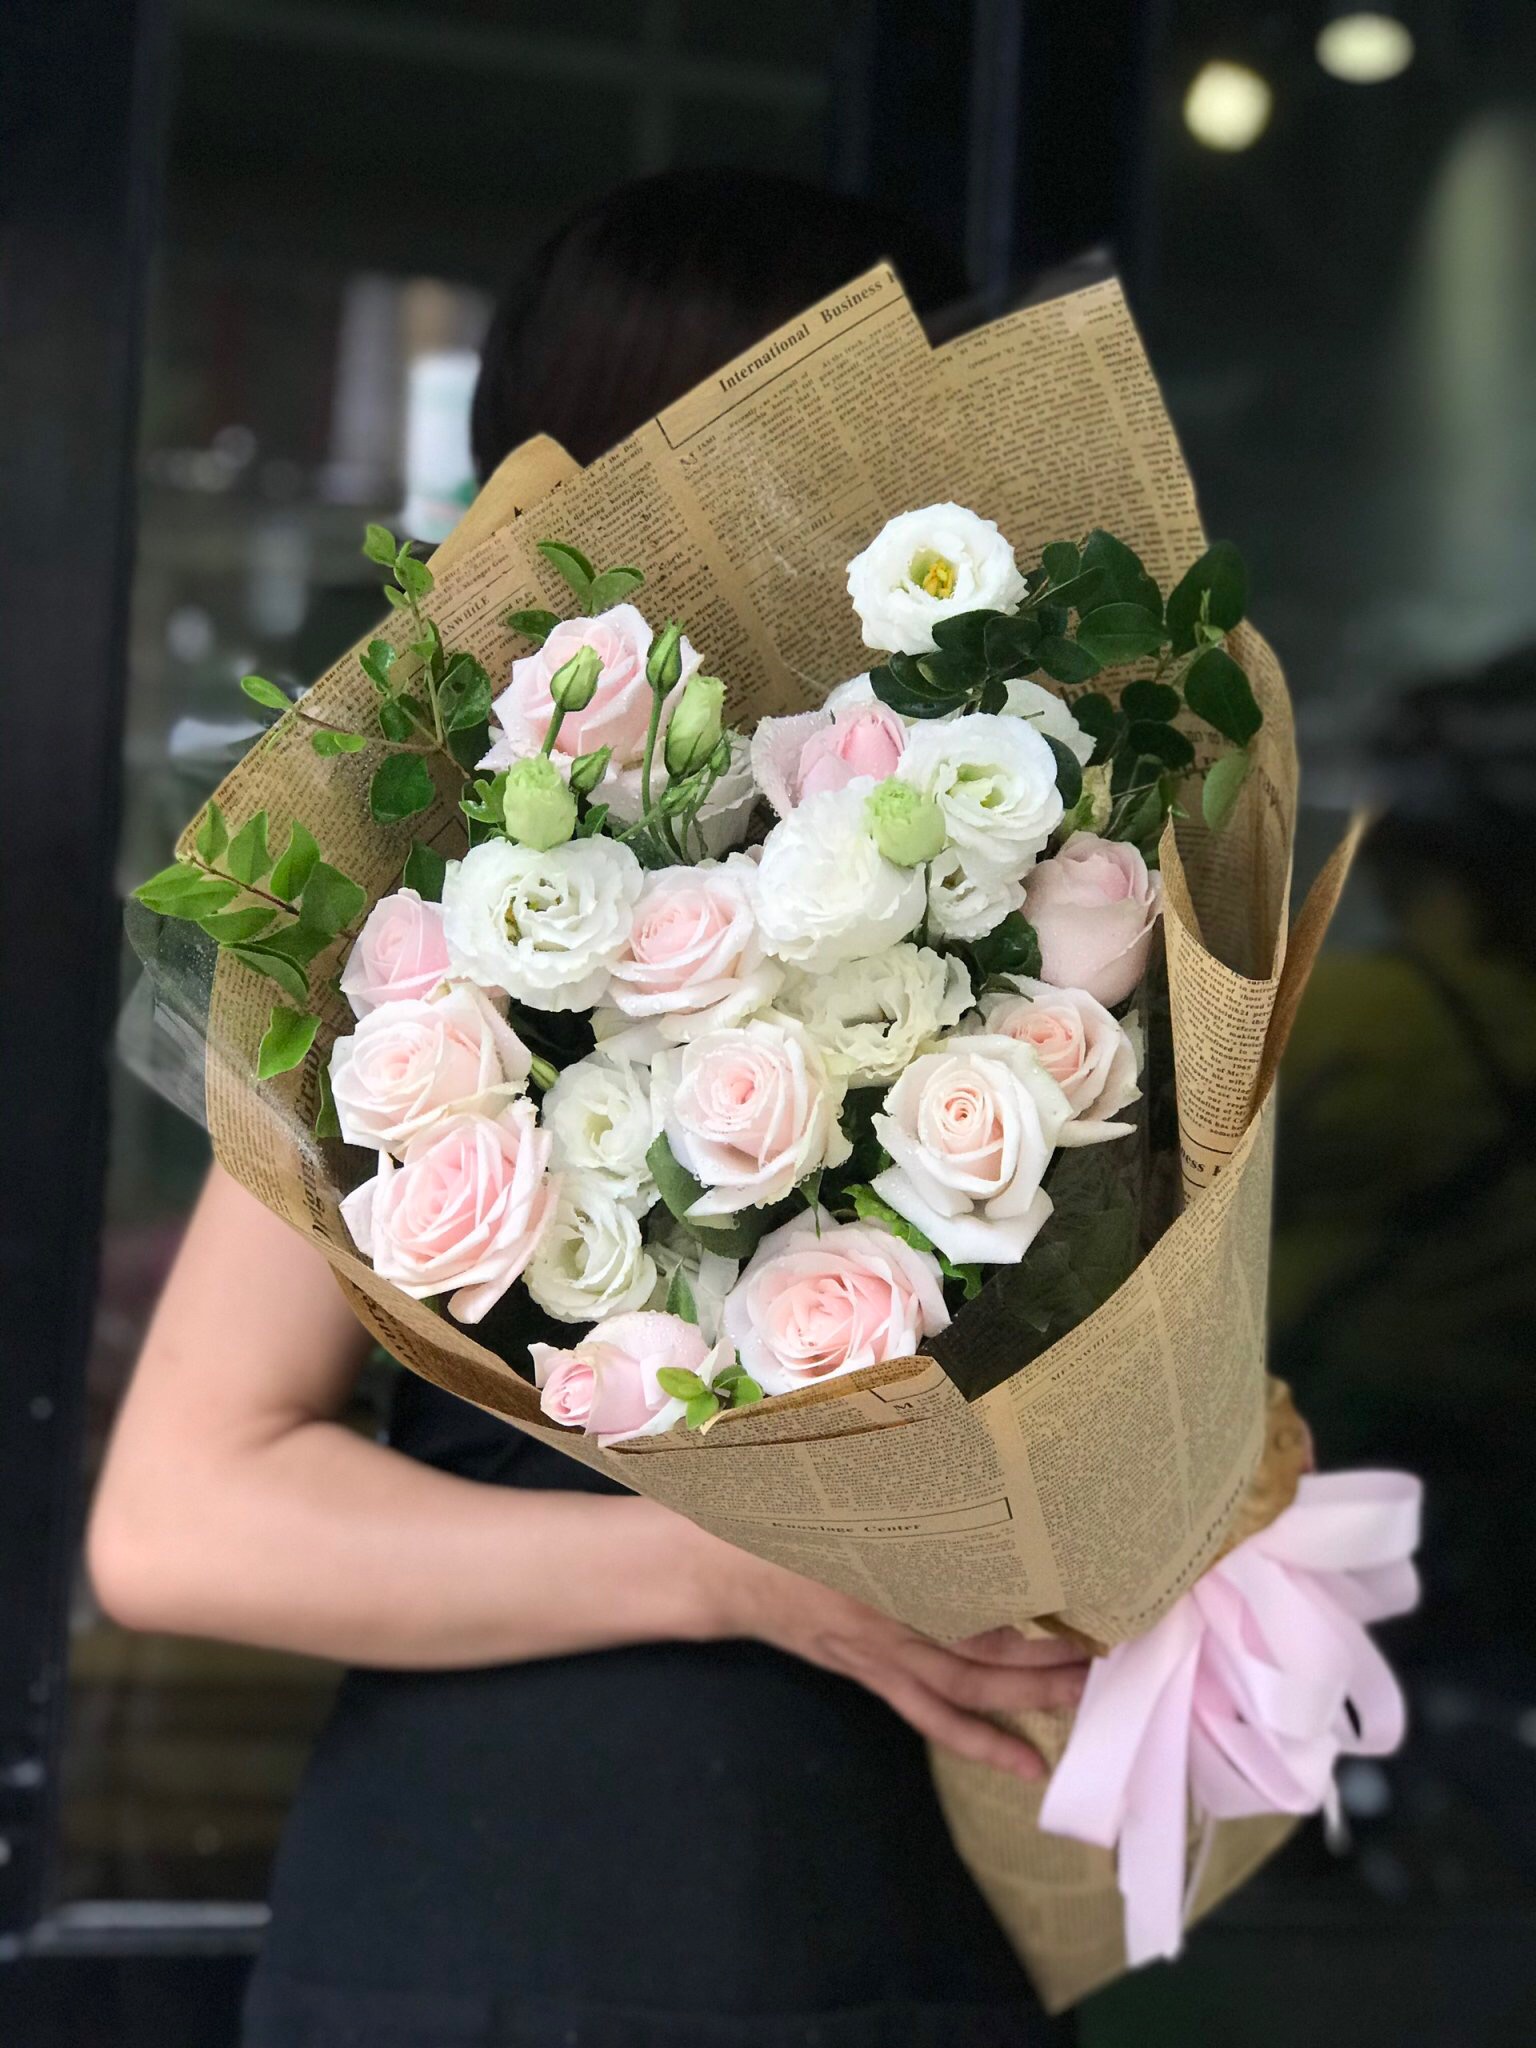 Shop hoa Tươi Xinh - Cửa hàng hoa tươi Cao Bằng chất lượng nhất 